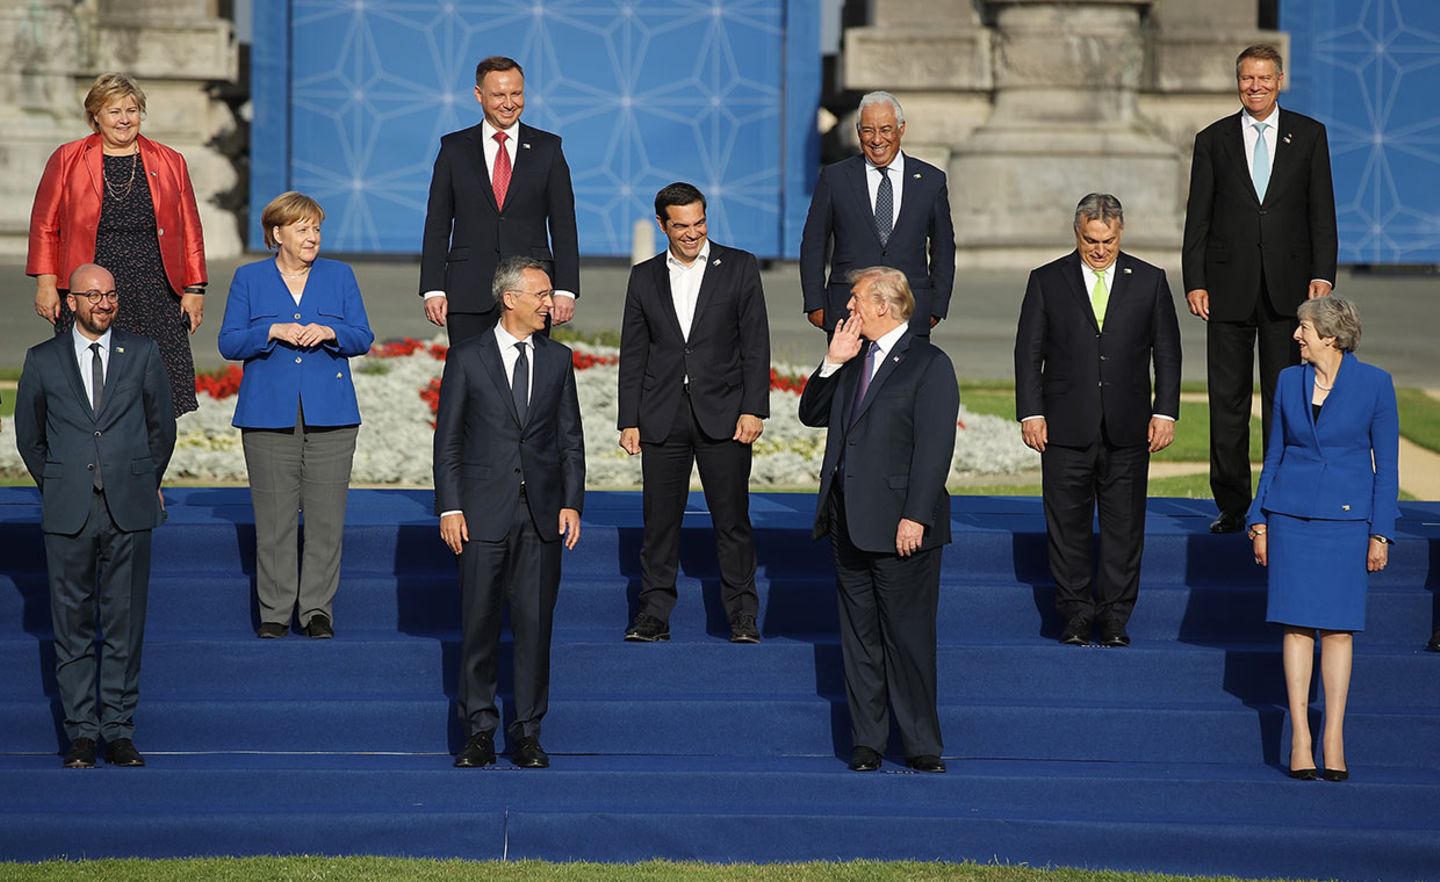 Allianzen wie die NATO sind nicht Trumps Sache. Der US-Präsident klärt Probleme lieber von Chefetage zu Chefetage